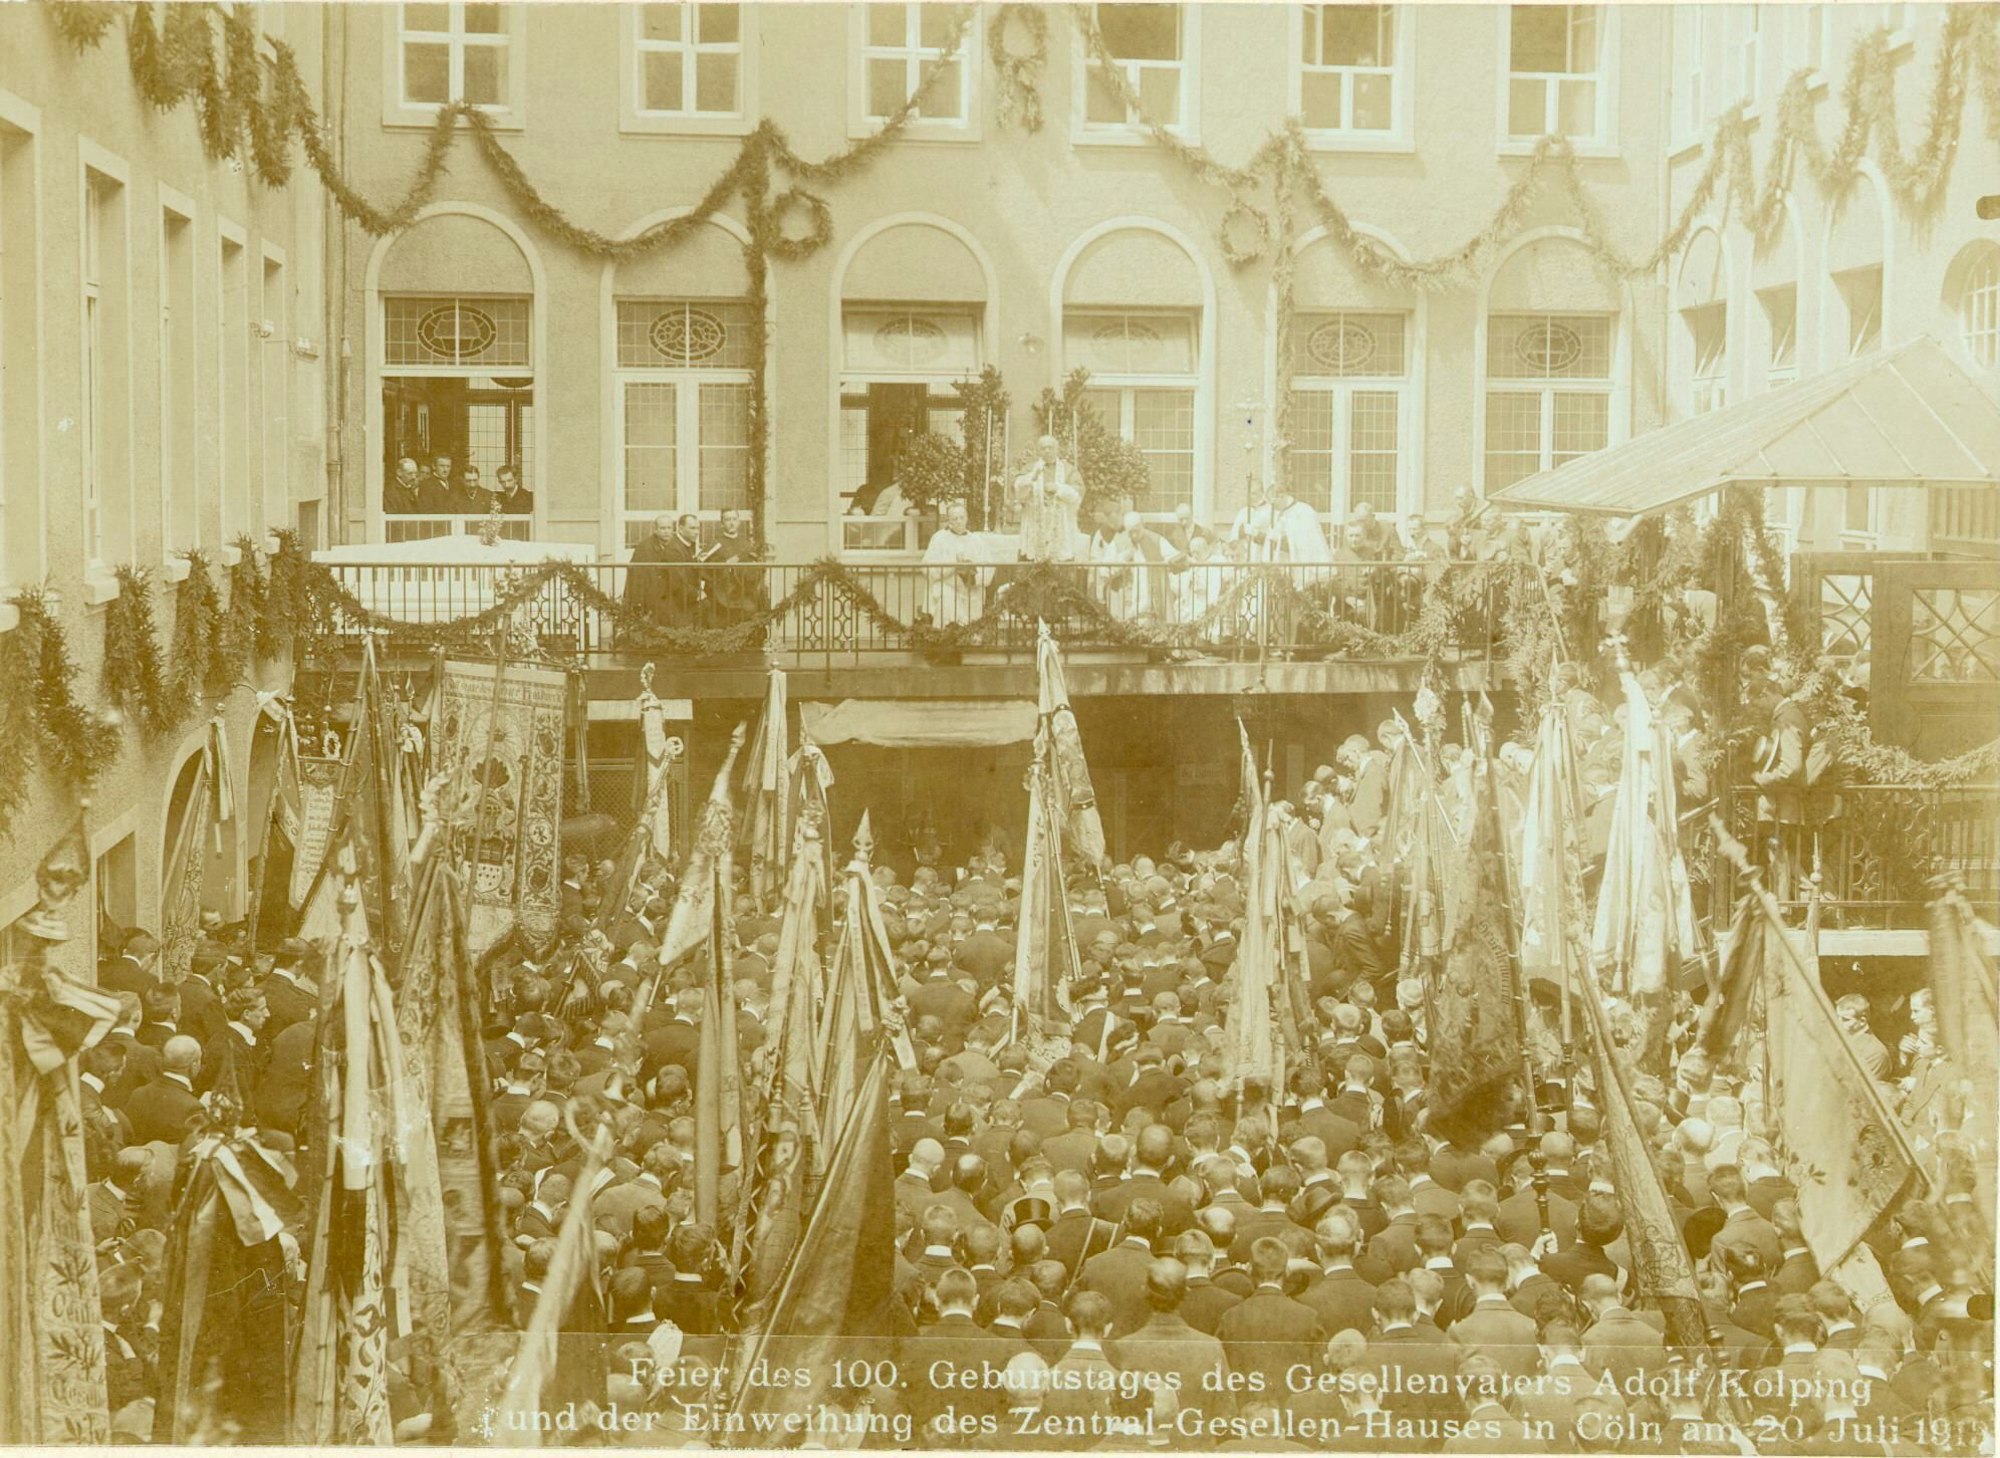 Feier des 100. Geburtstages des Gesellenvaters Adolf Kolping und der Einweihung des Zentral-Gesellen-Hauses in Köln, 20. 07.1913